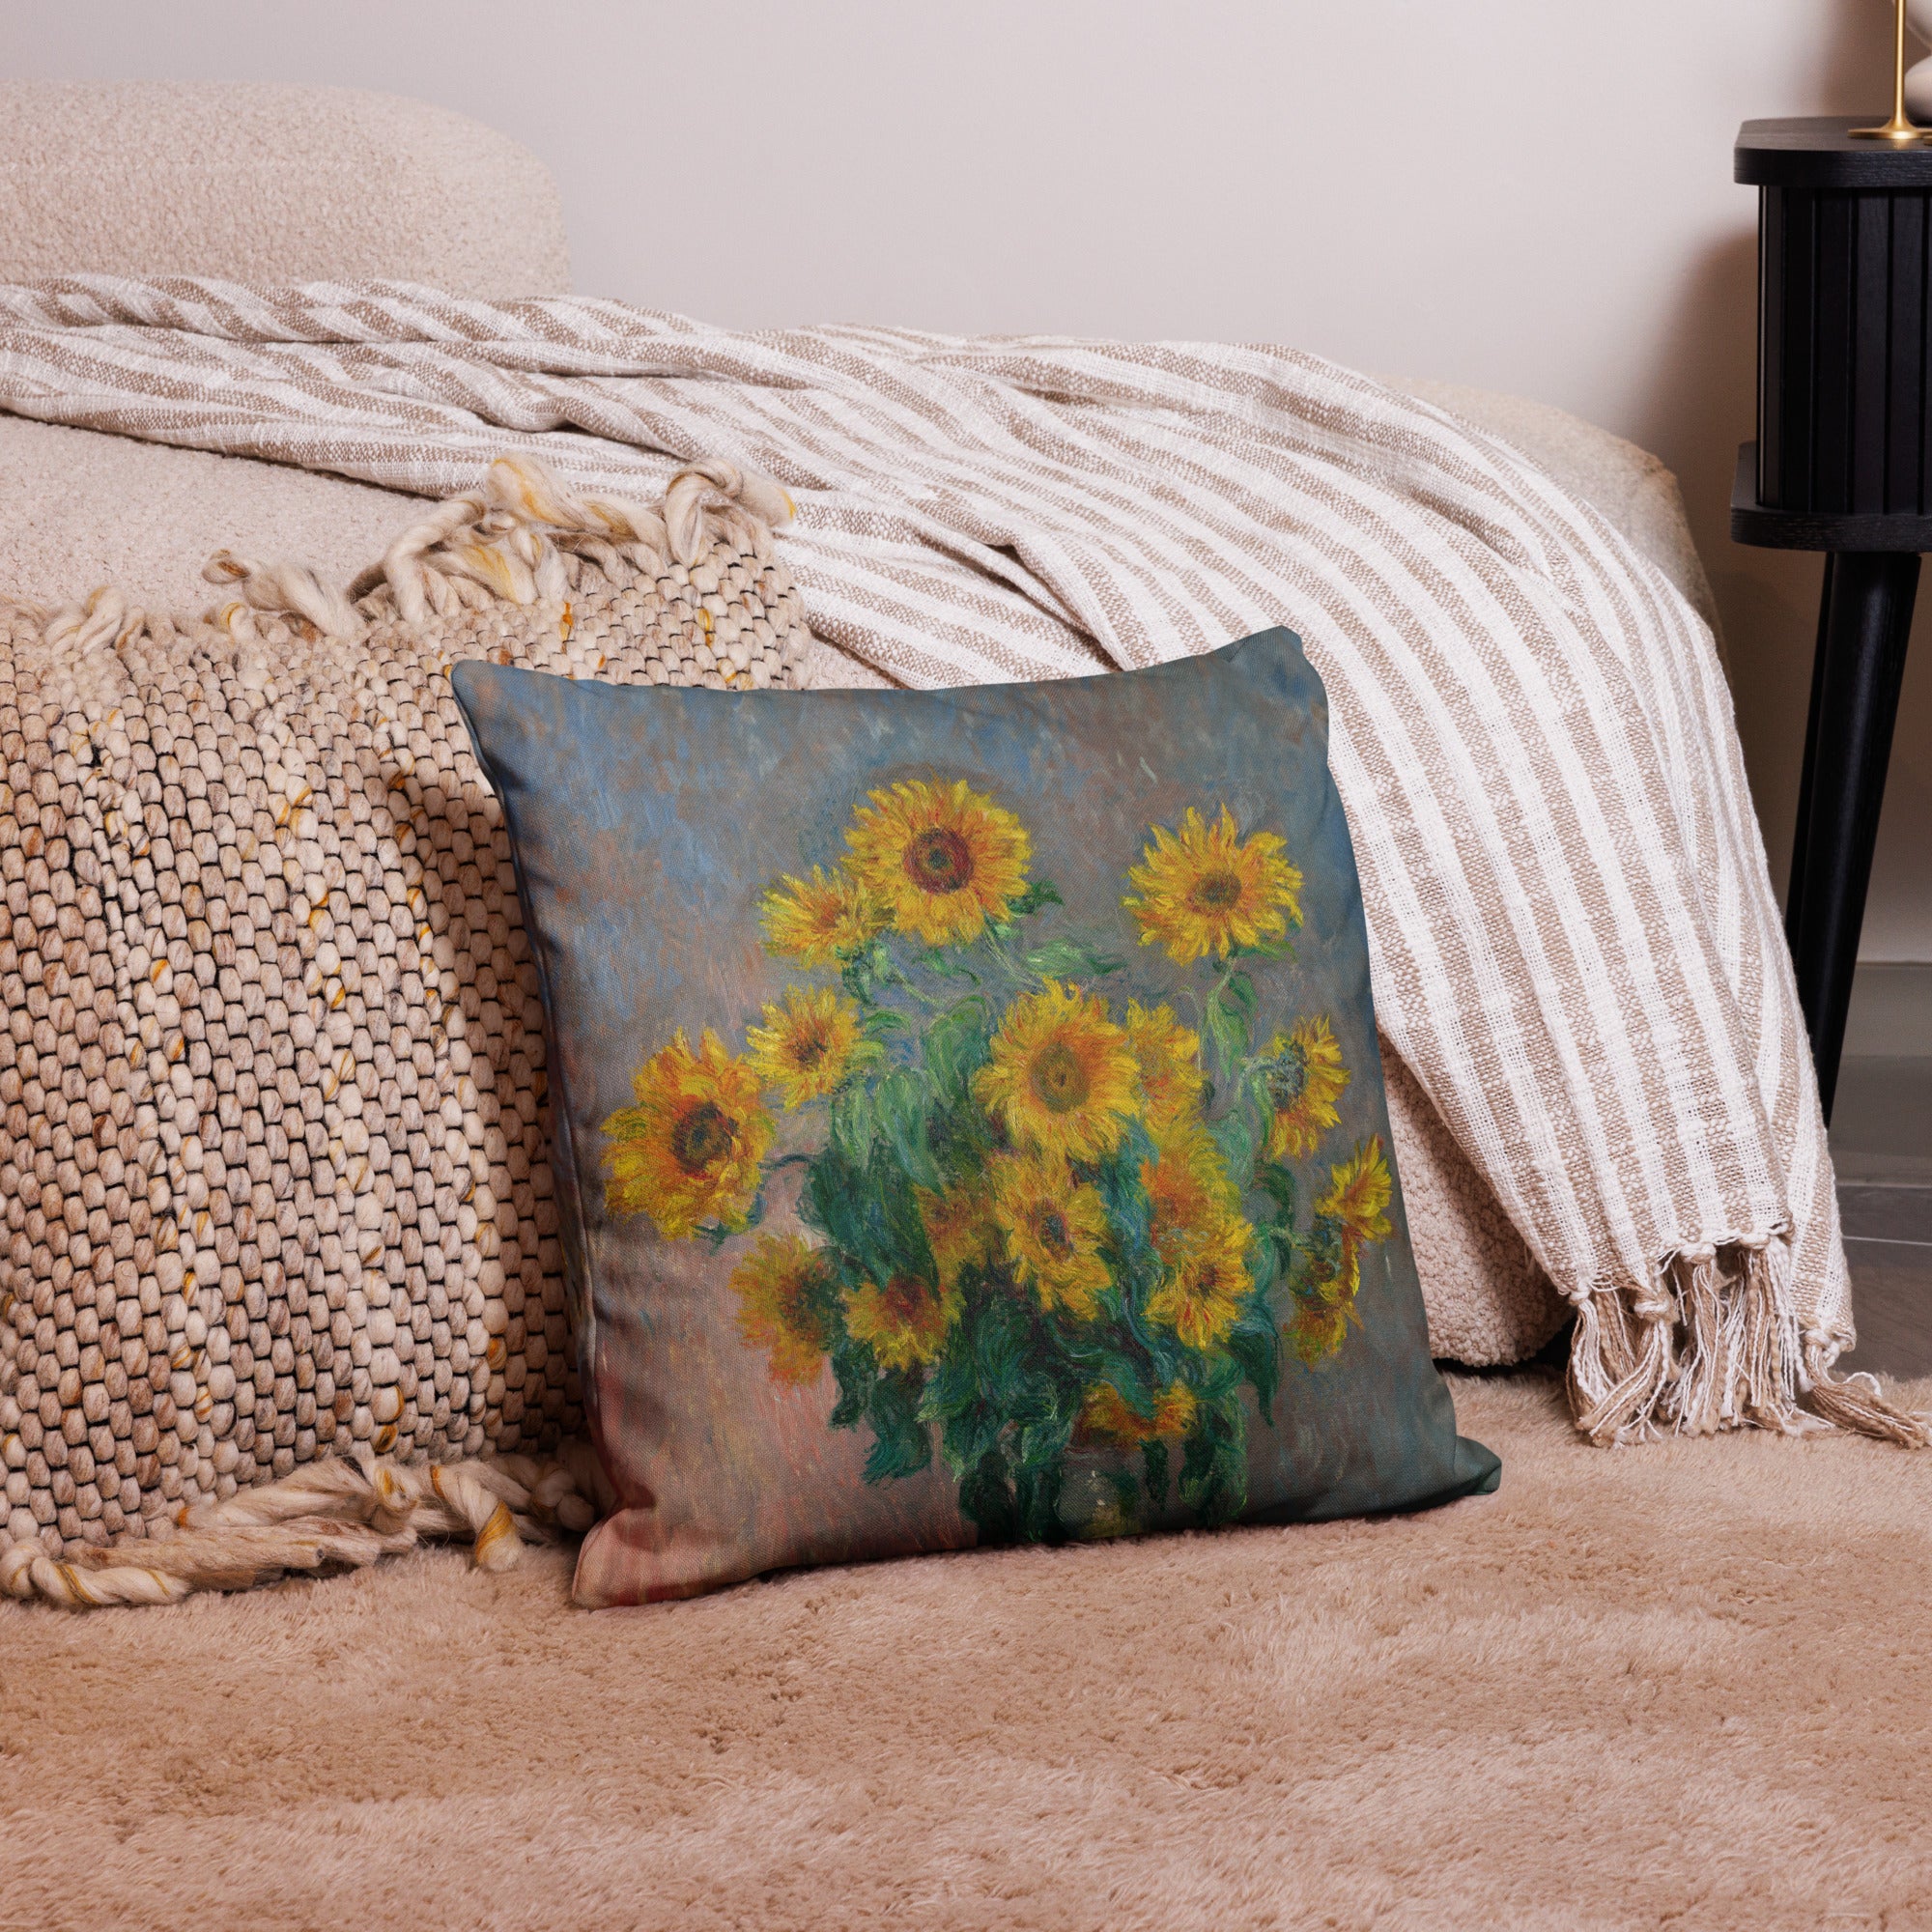 Claude Monet 'Bouquet of Sunflowers' Famous Painting Premium Pillow | Premium Art Cushion